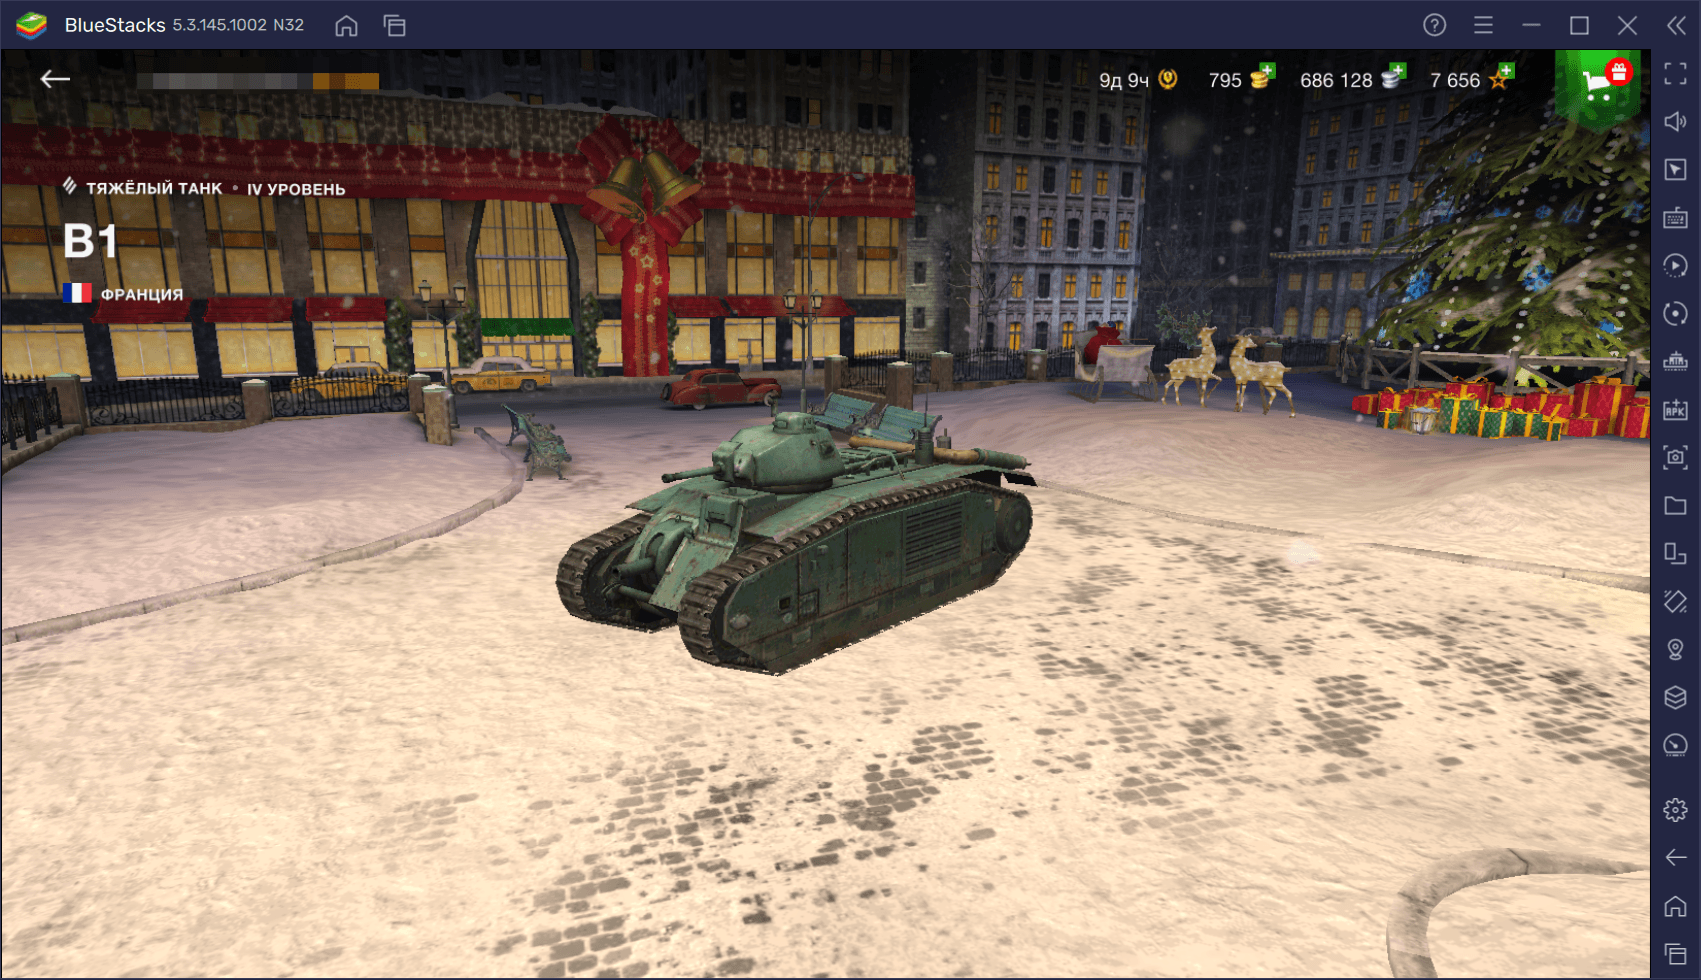 Игроки назвали пять лучших танков IV уровня в World Of Tanks Blitz